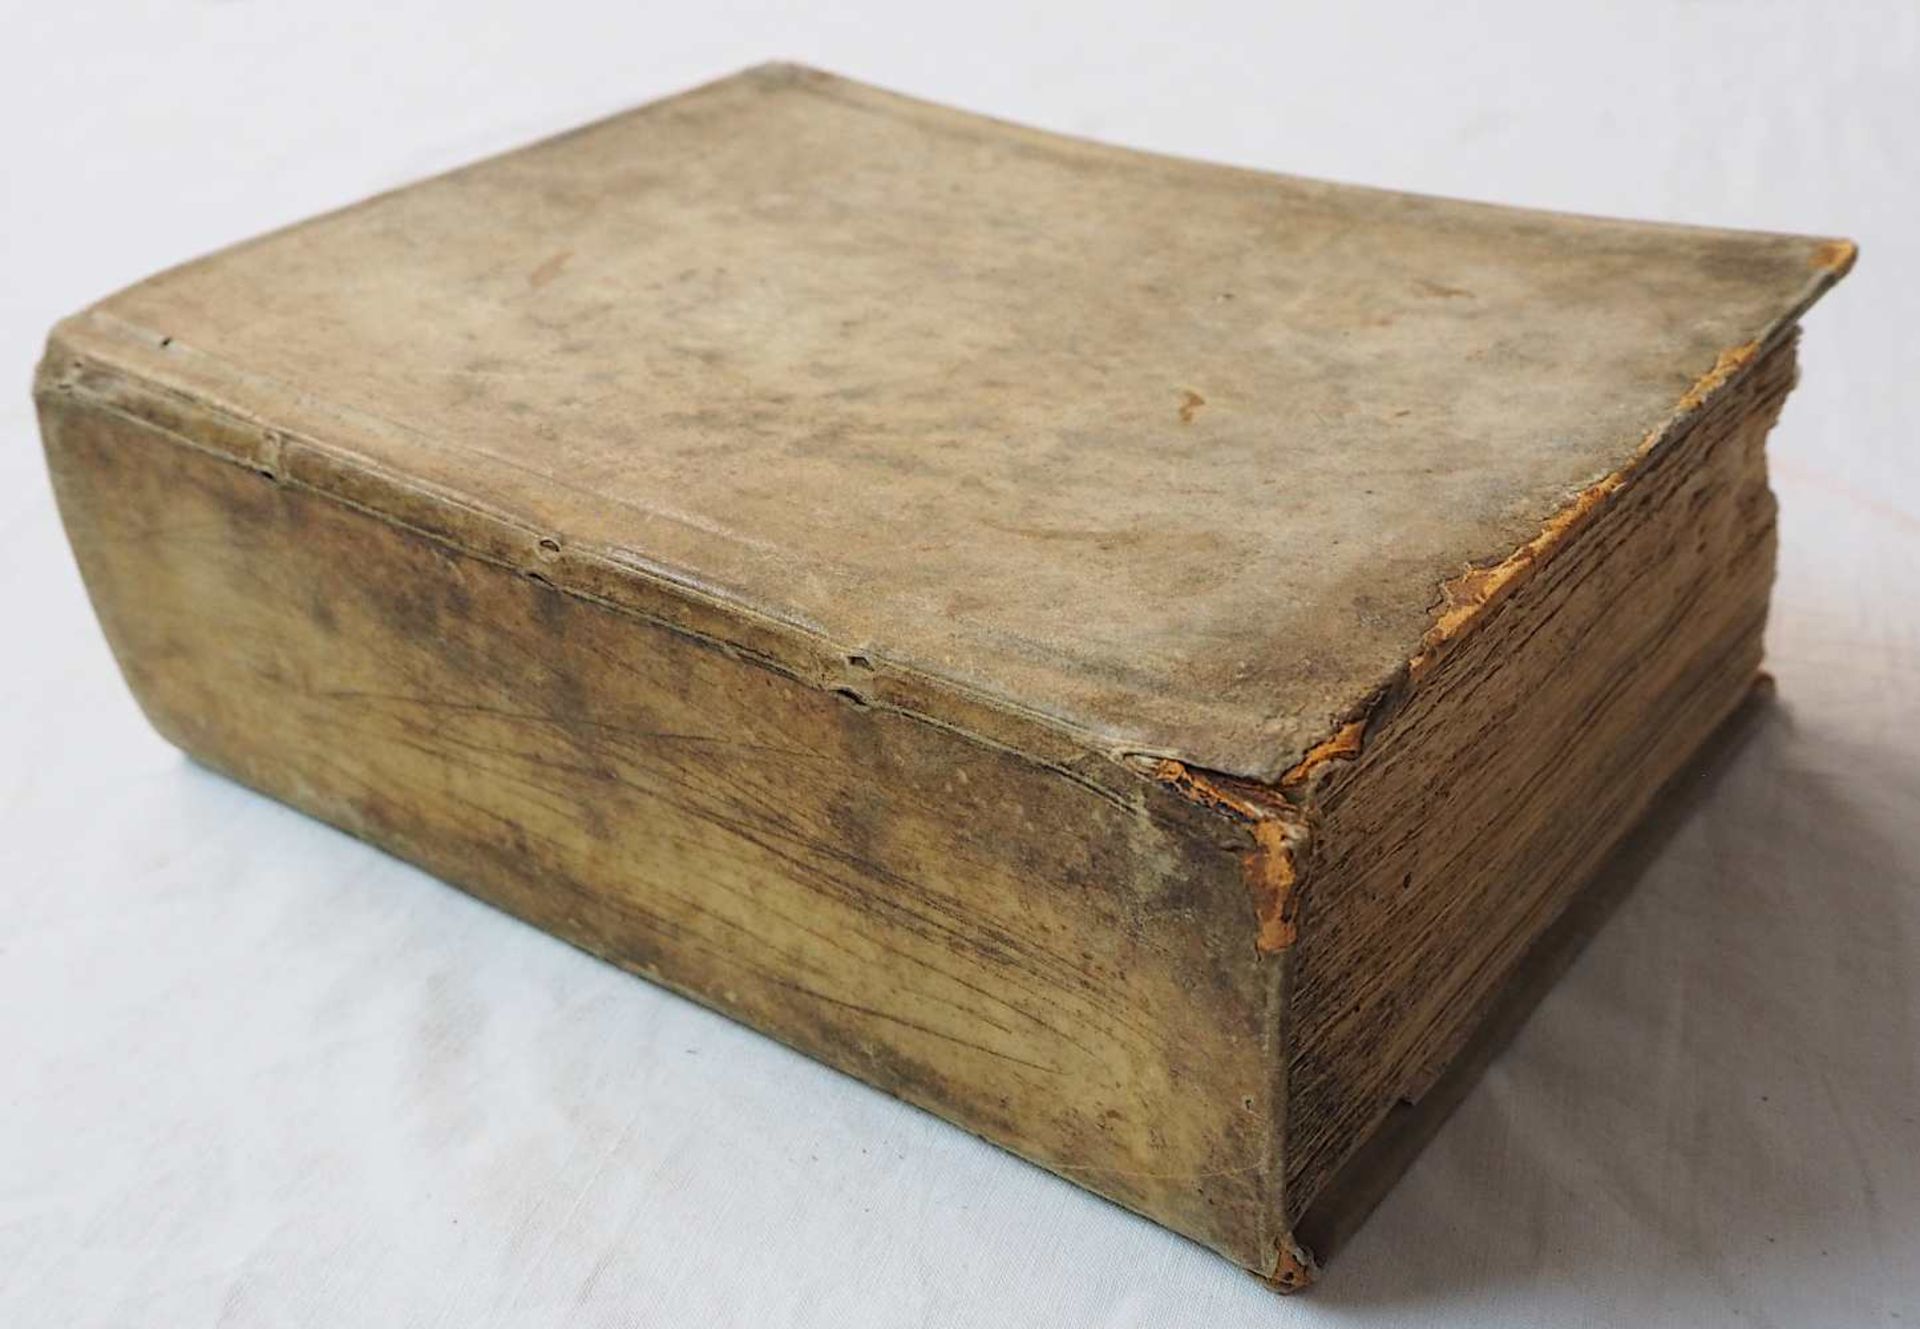 1 medizinisch-chirurgisches Lehrbuch, innen handschriftlich datiert 1750: (wohl) "Chi